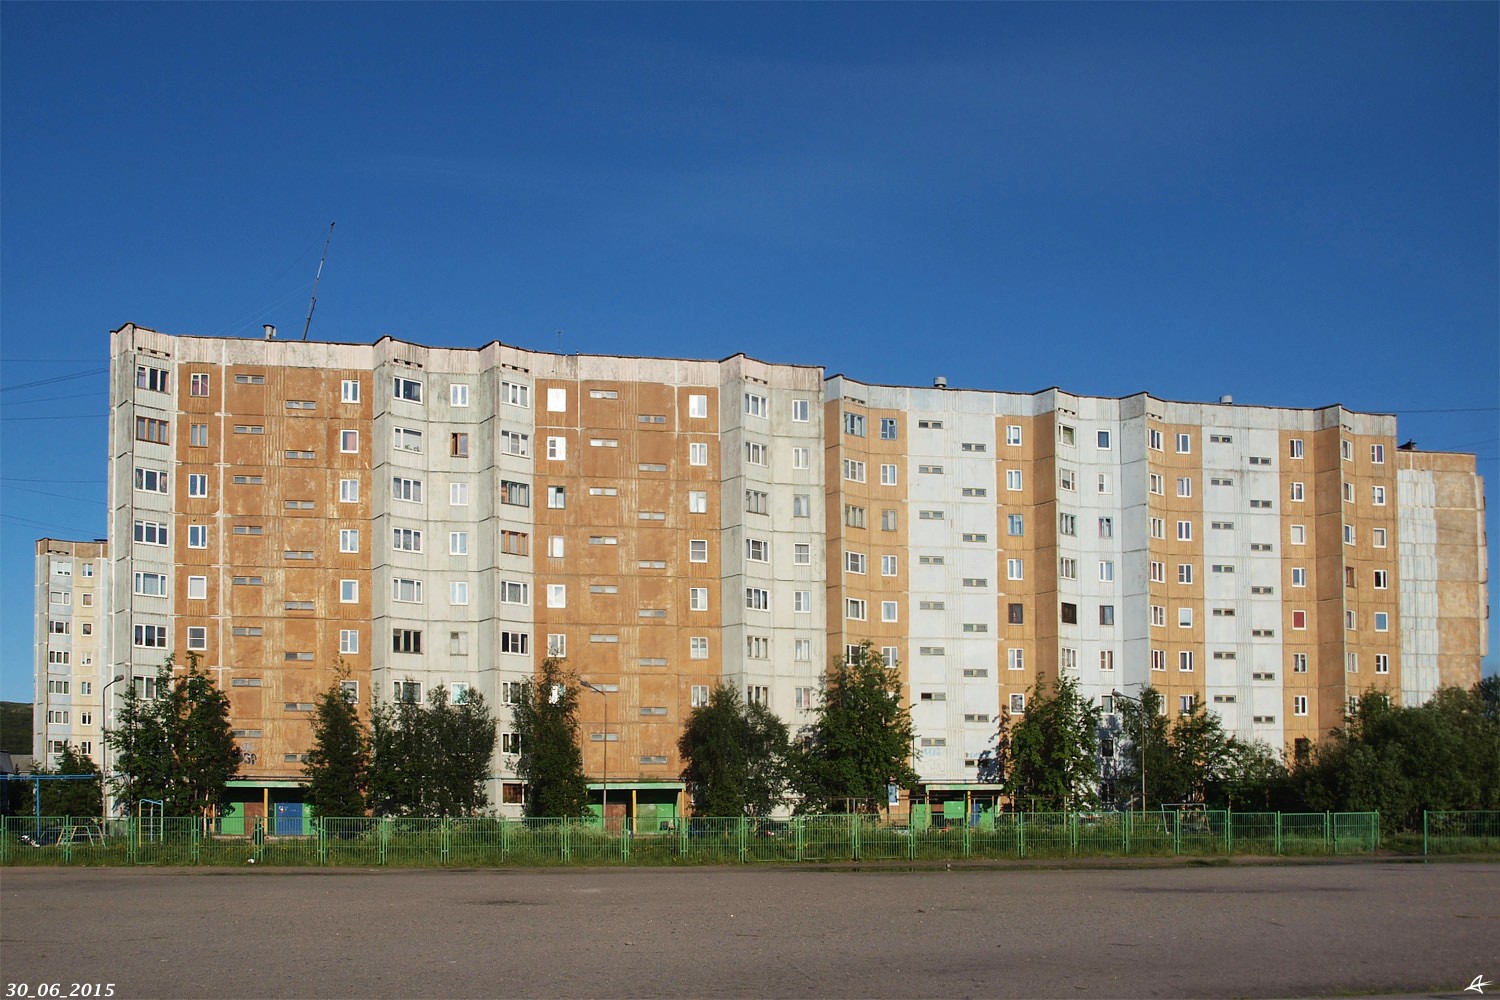 Мурманск, Улица Свердлова, 68; Улица Свердлова, 70